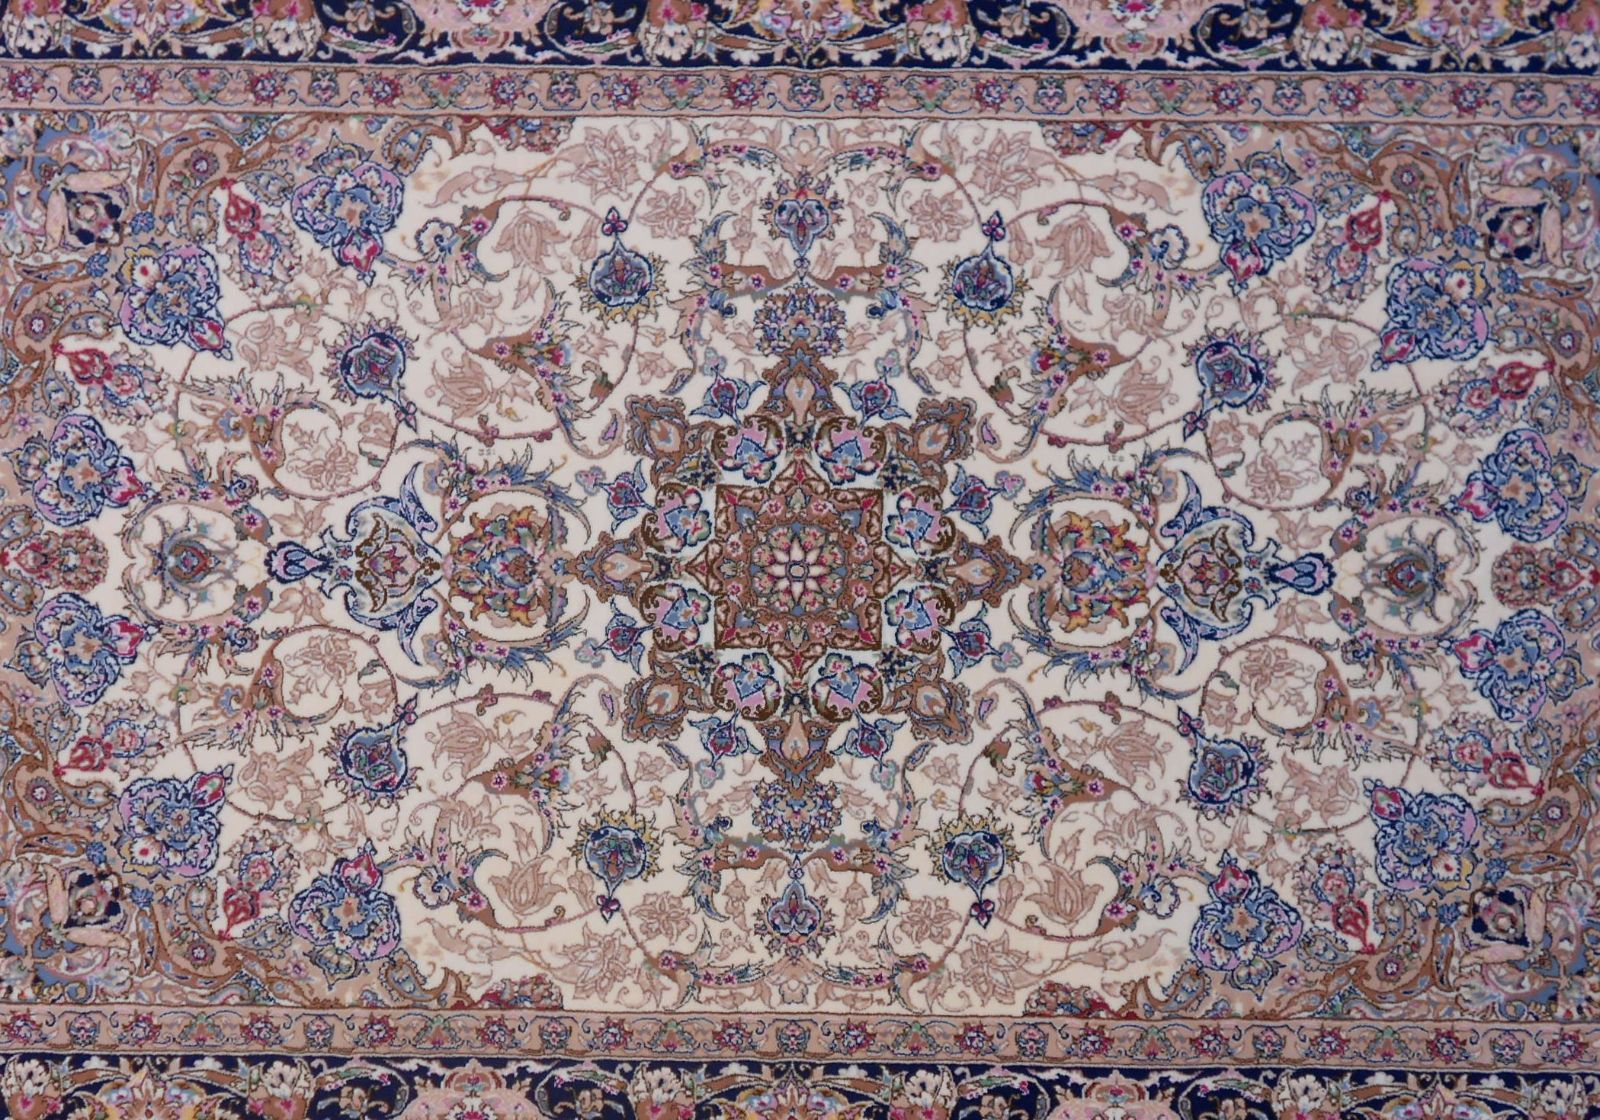 170万ノット！輝く、多色織絨毯！本場イラン産100×150cm‐201001-